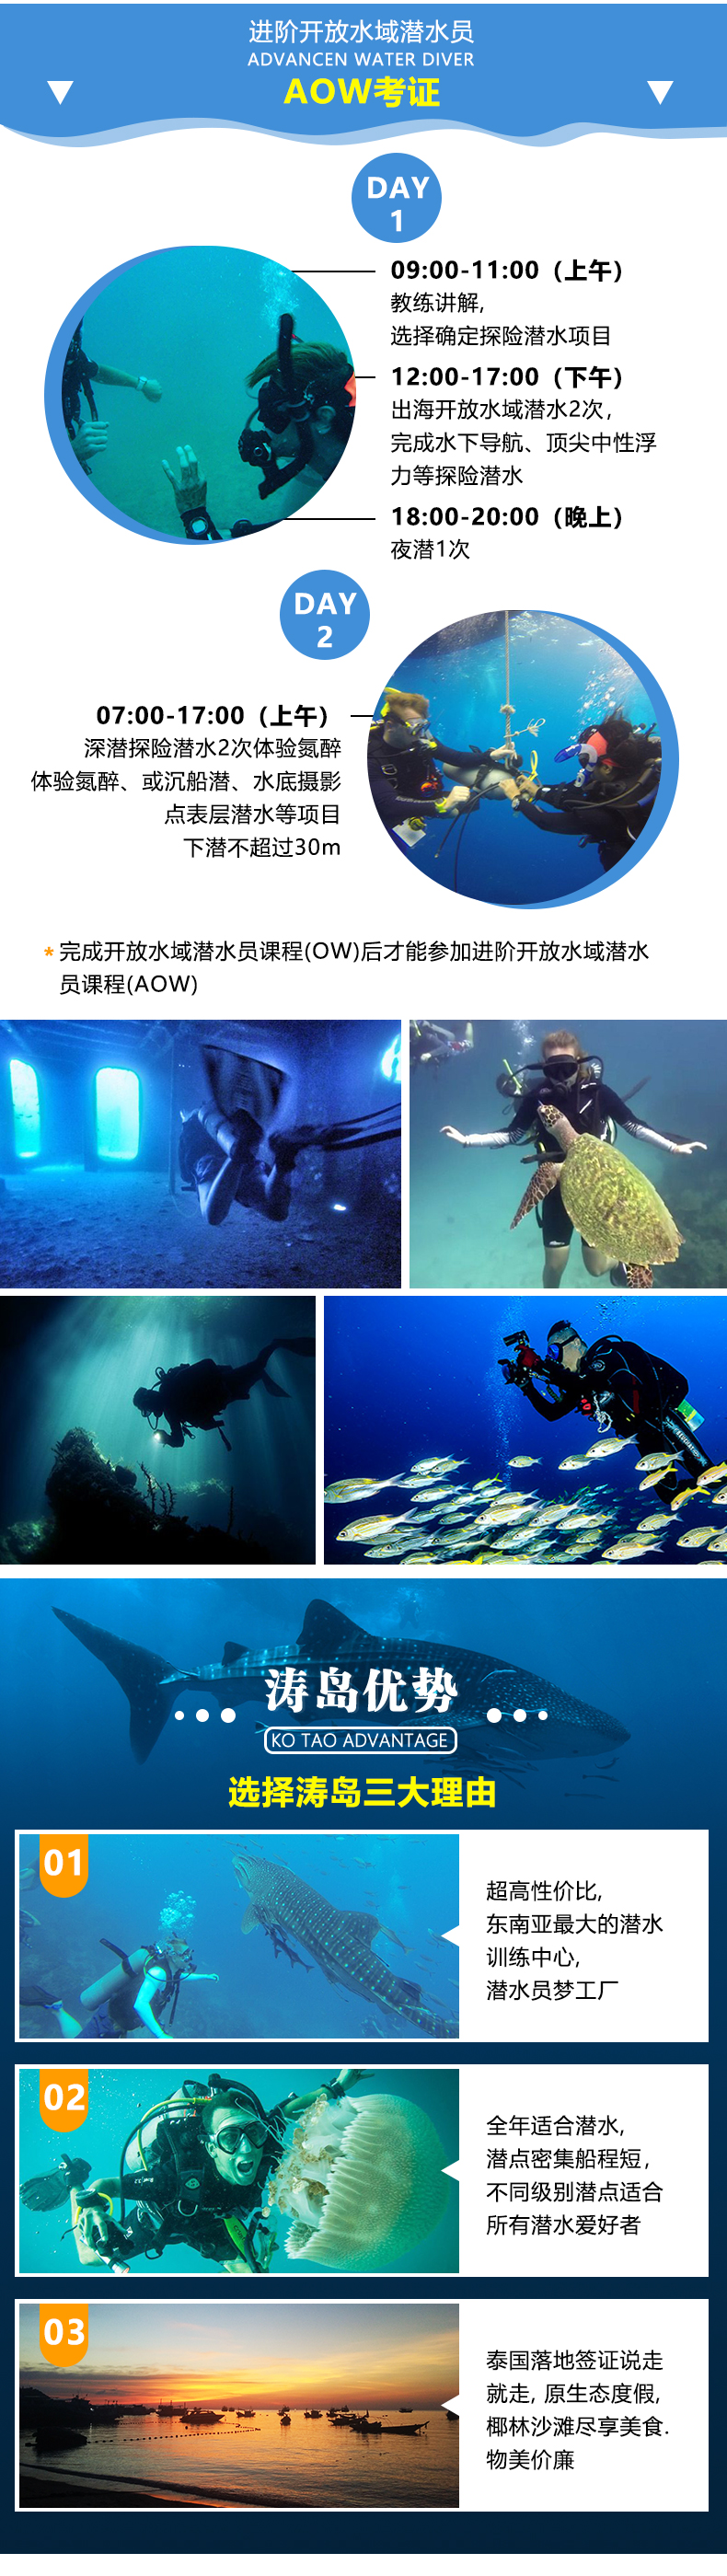 泰国涛岛 Crystal Dive 龟岛潜水 PADI OW/AOW 考证教学课程 潜水证